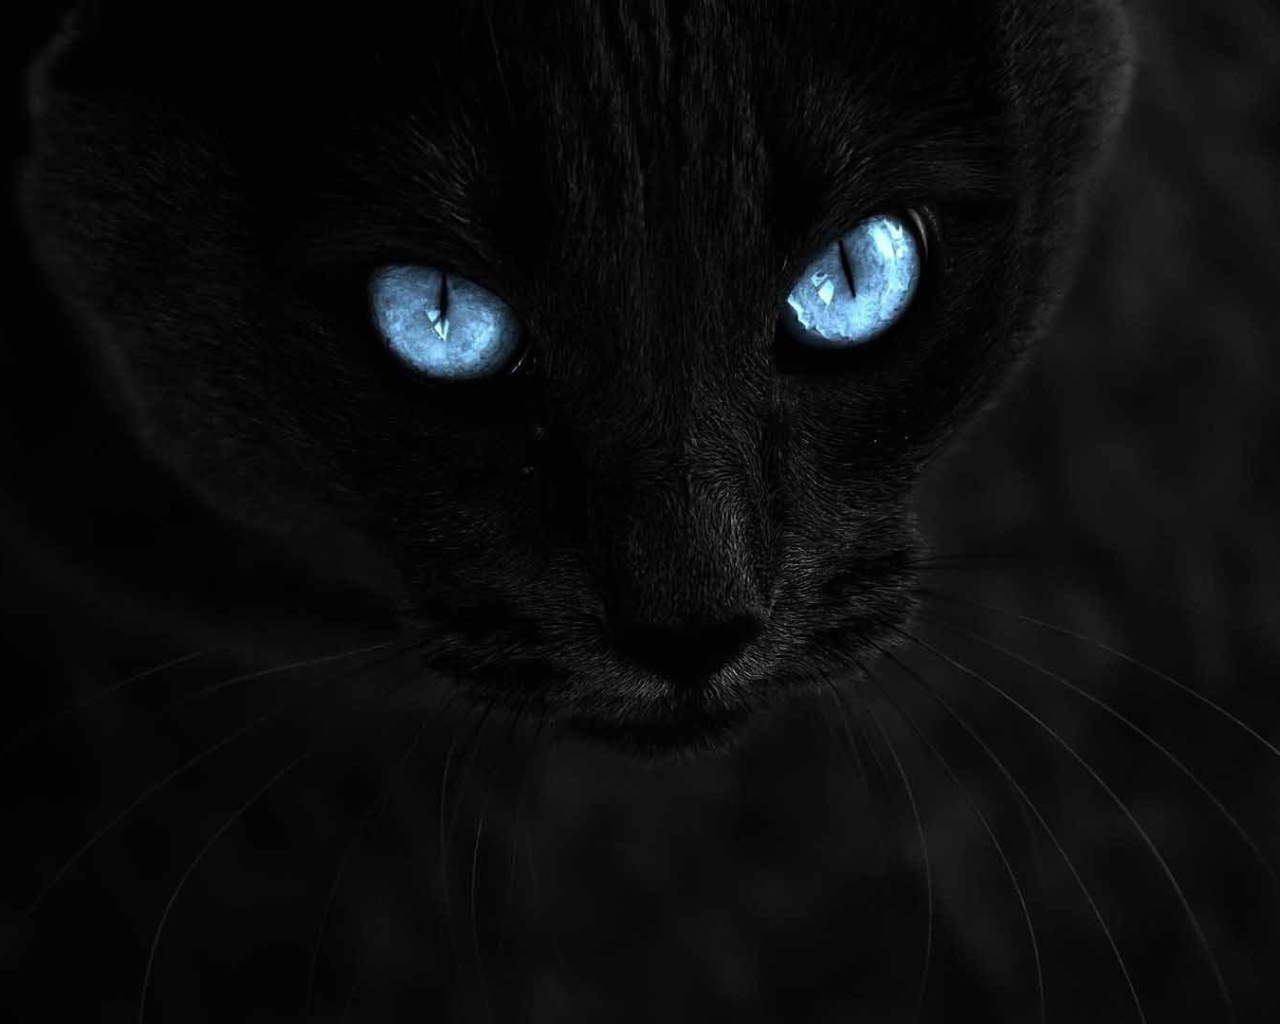 Чёрный кот с голубыми глазами на чёрном фоне